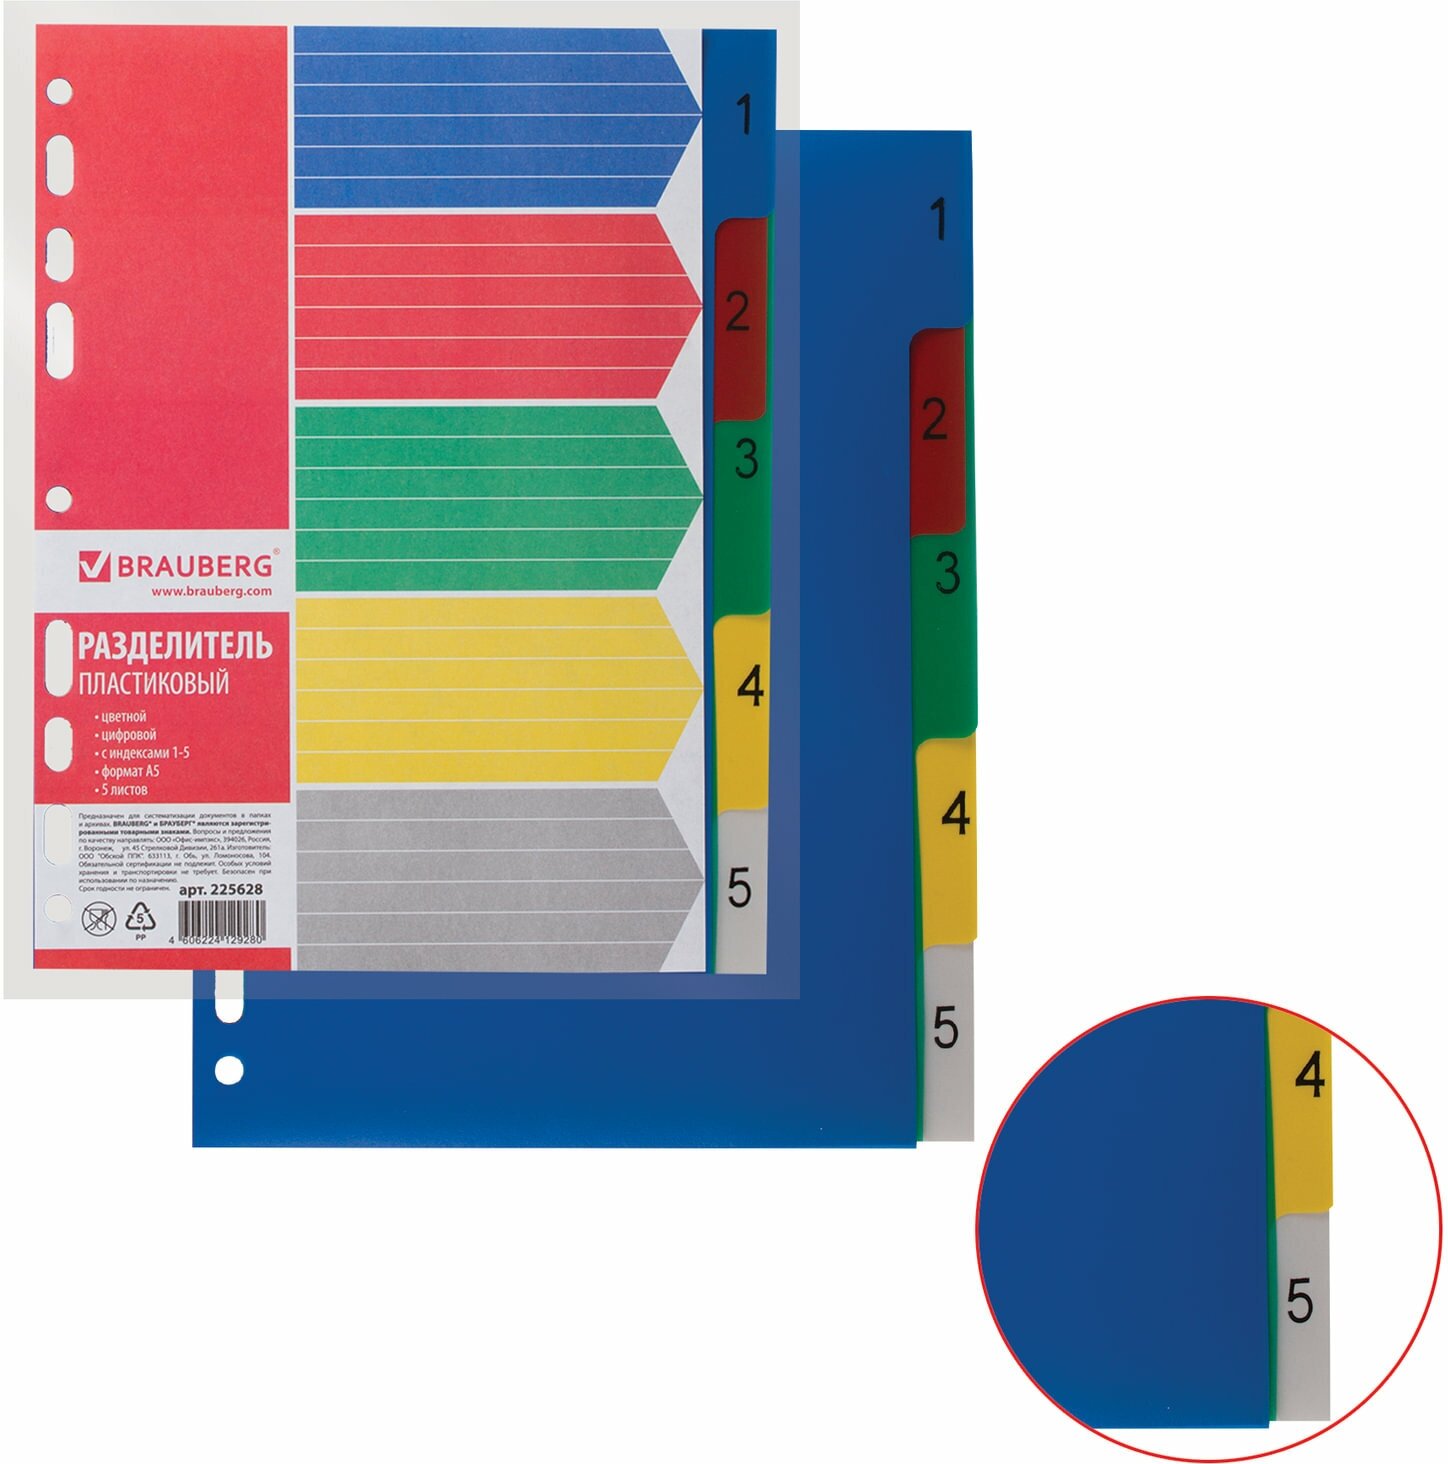 Разделитель пластиковый Brauberg малый формат (210х162 мм), А5, 5 листов, цифровой 1-5, оглавление (225628)